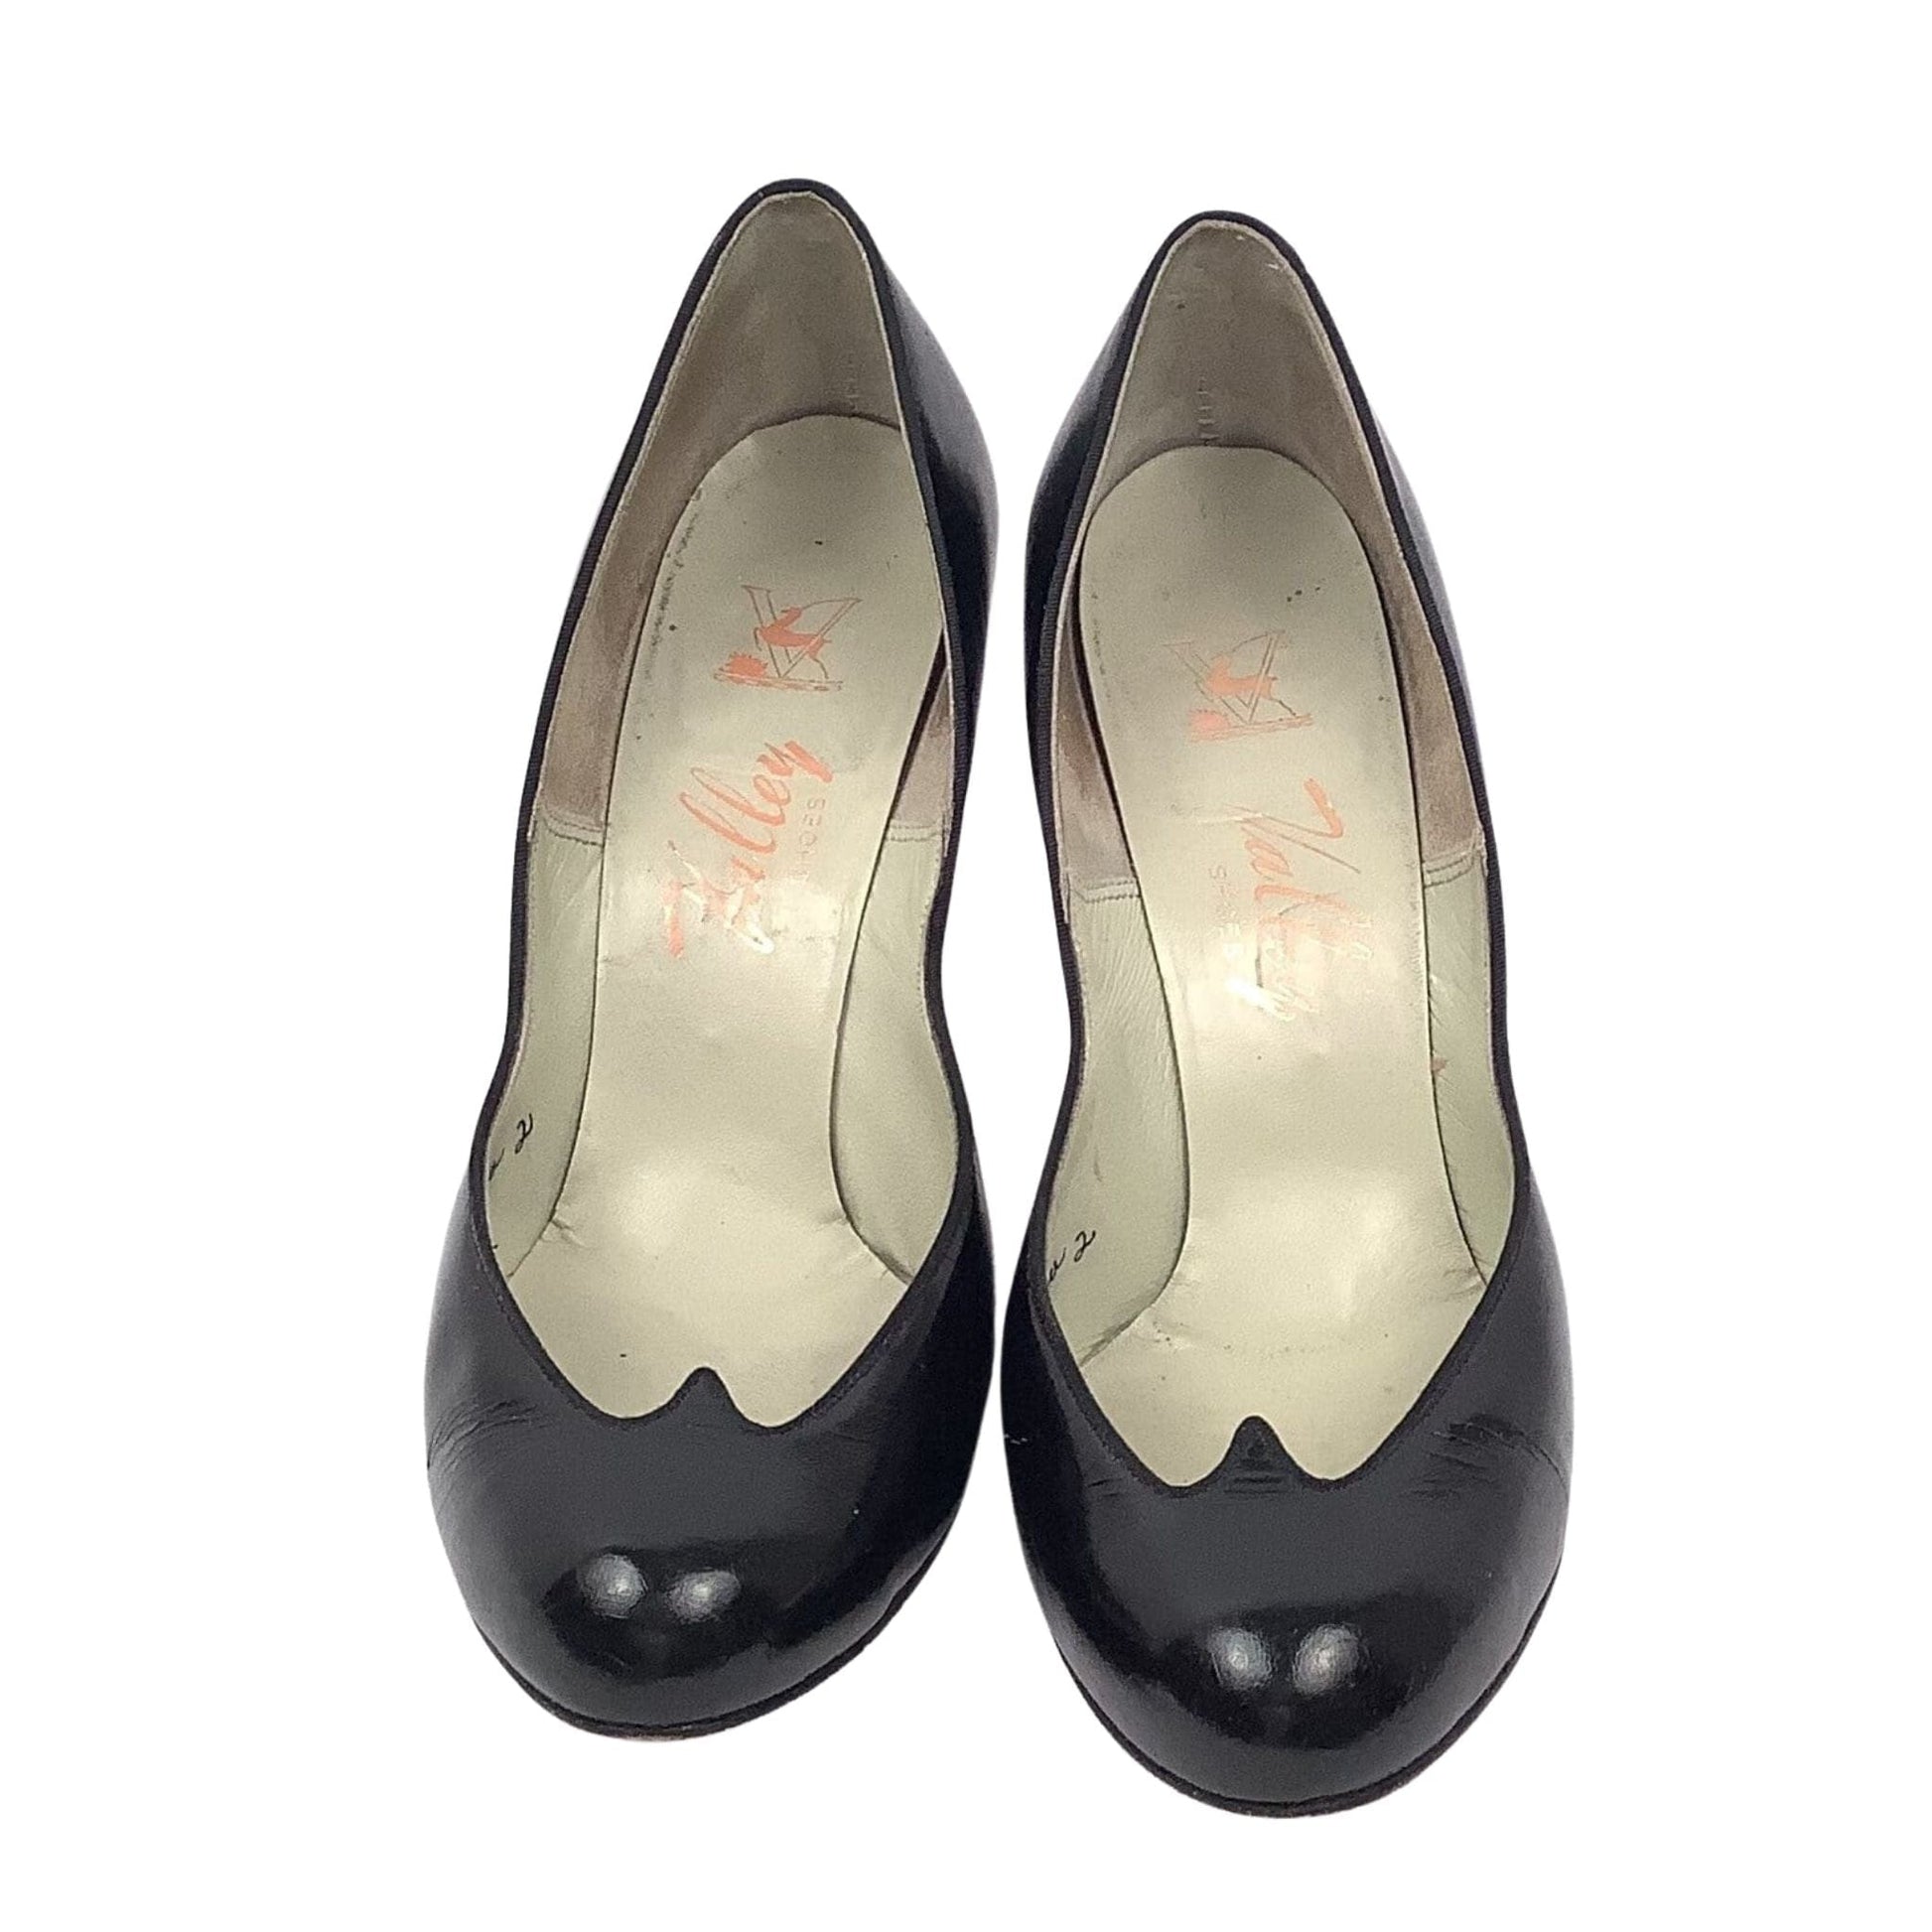 Genuine 1940s Pump Shoes 7 / Black / Vintage 1940s